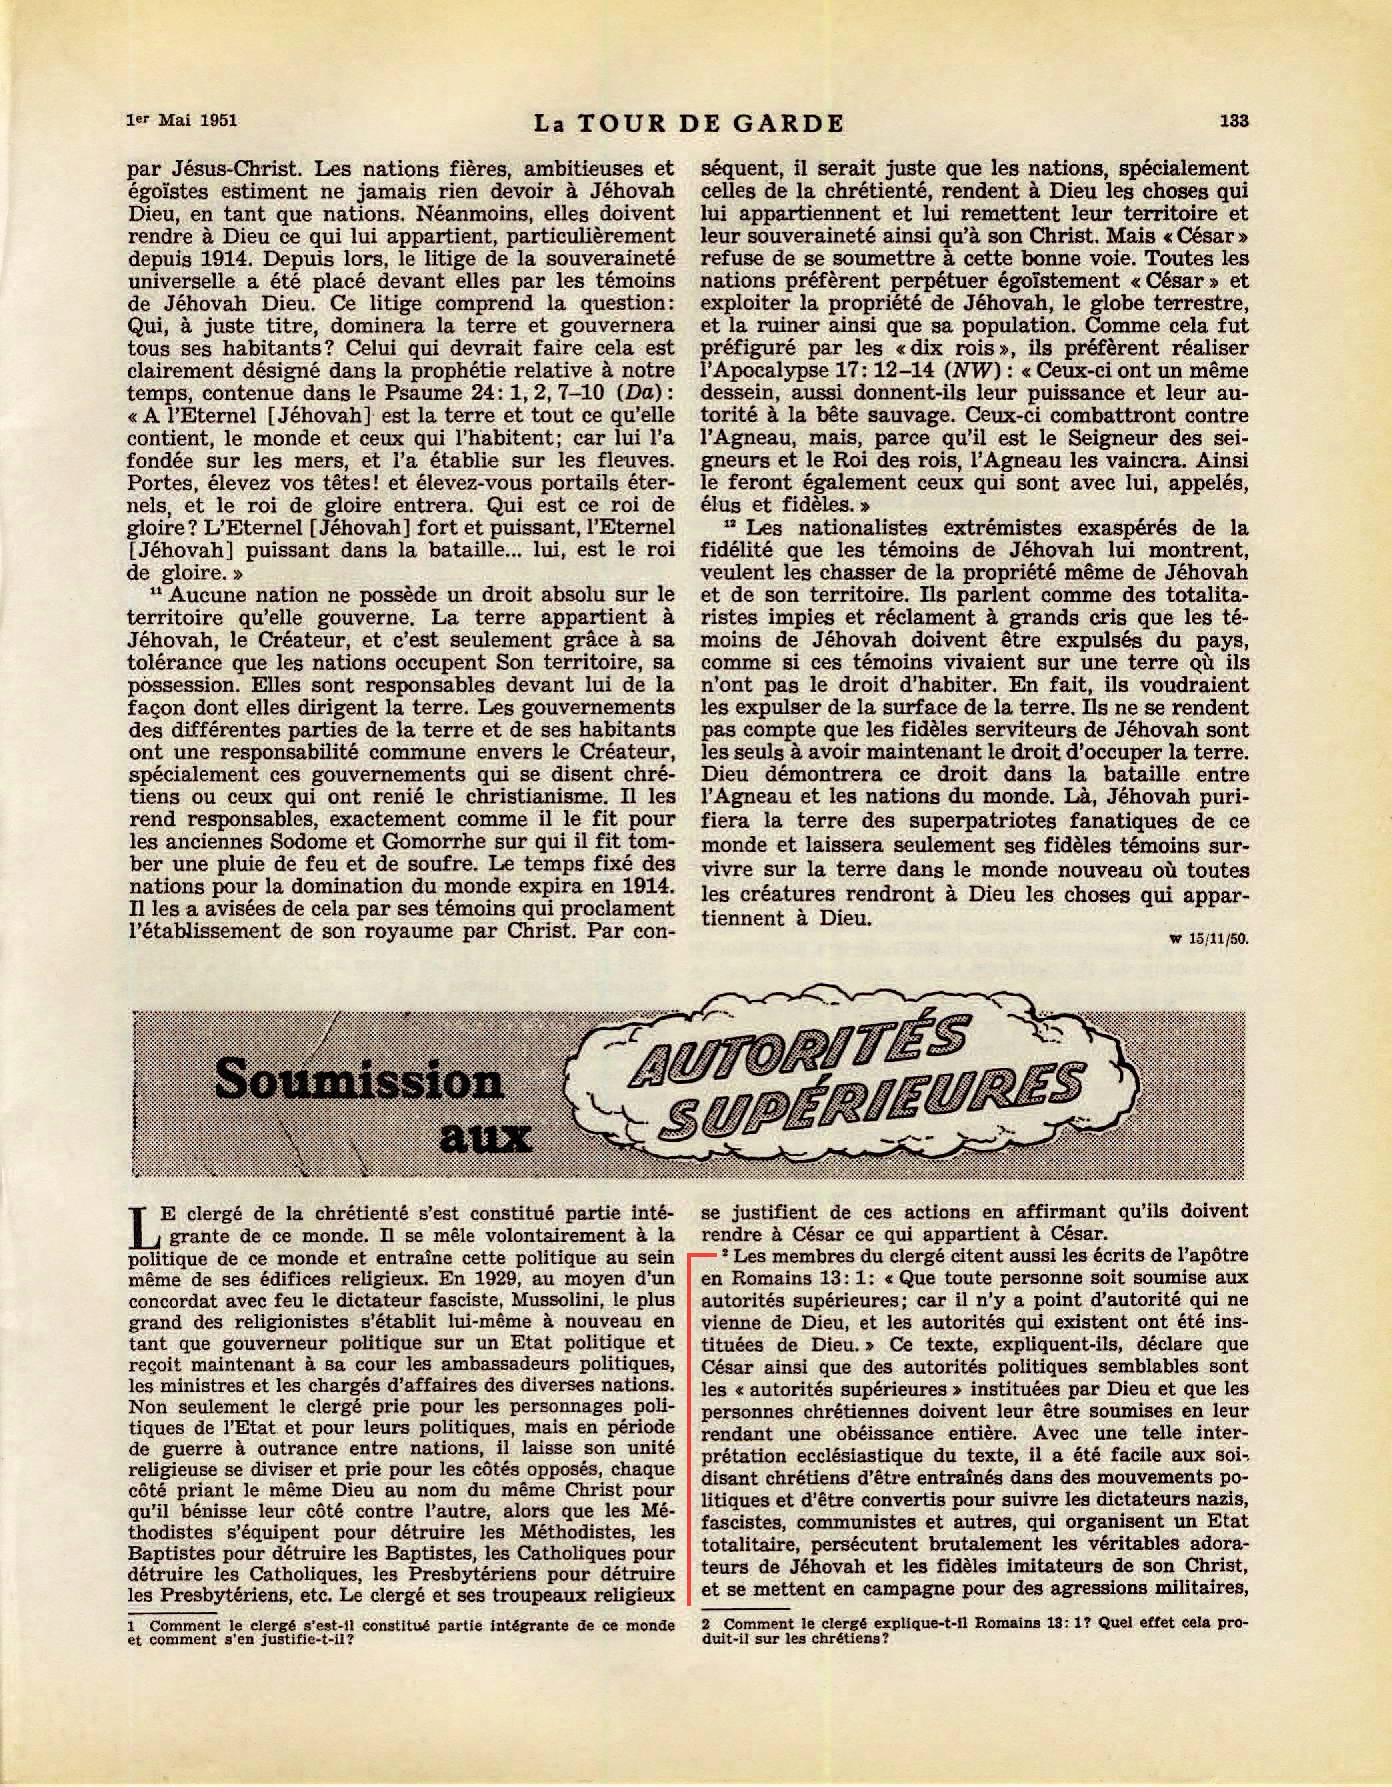 iLes autorités supérieures - Page 2 La-Tour-de-Garde-1-mai-1951-p133